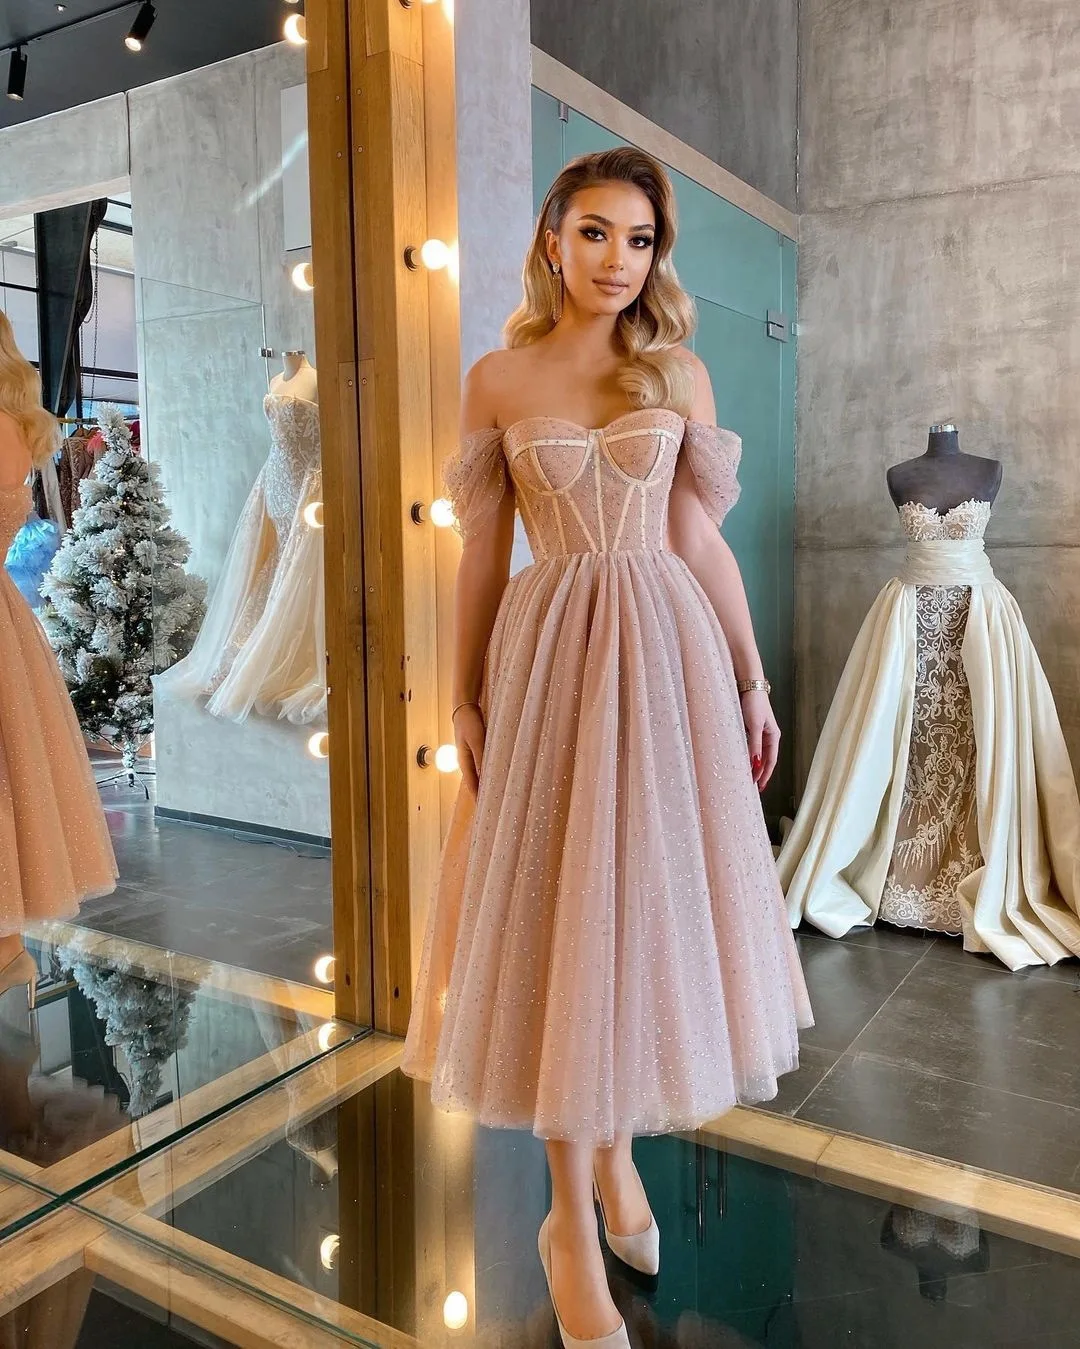 2022 New Short Prom Dresses With Boat Neck Celebrity Dresses Evening Dresses Robes De Cocktail Formal Dresses